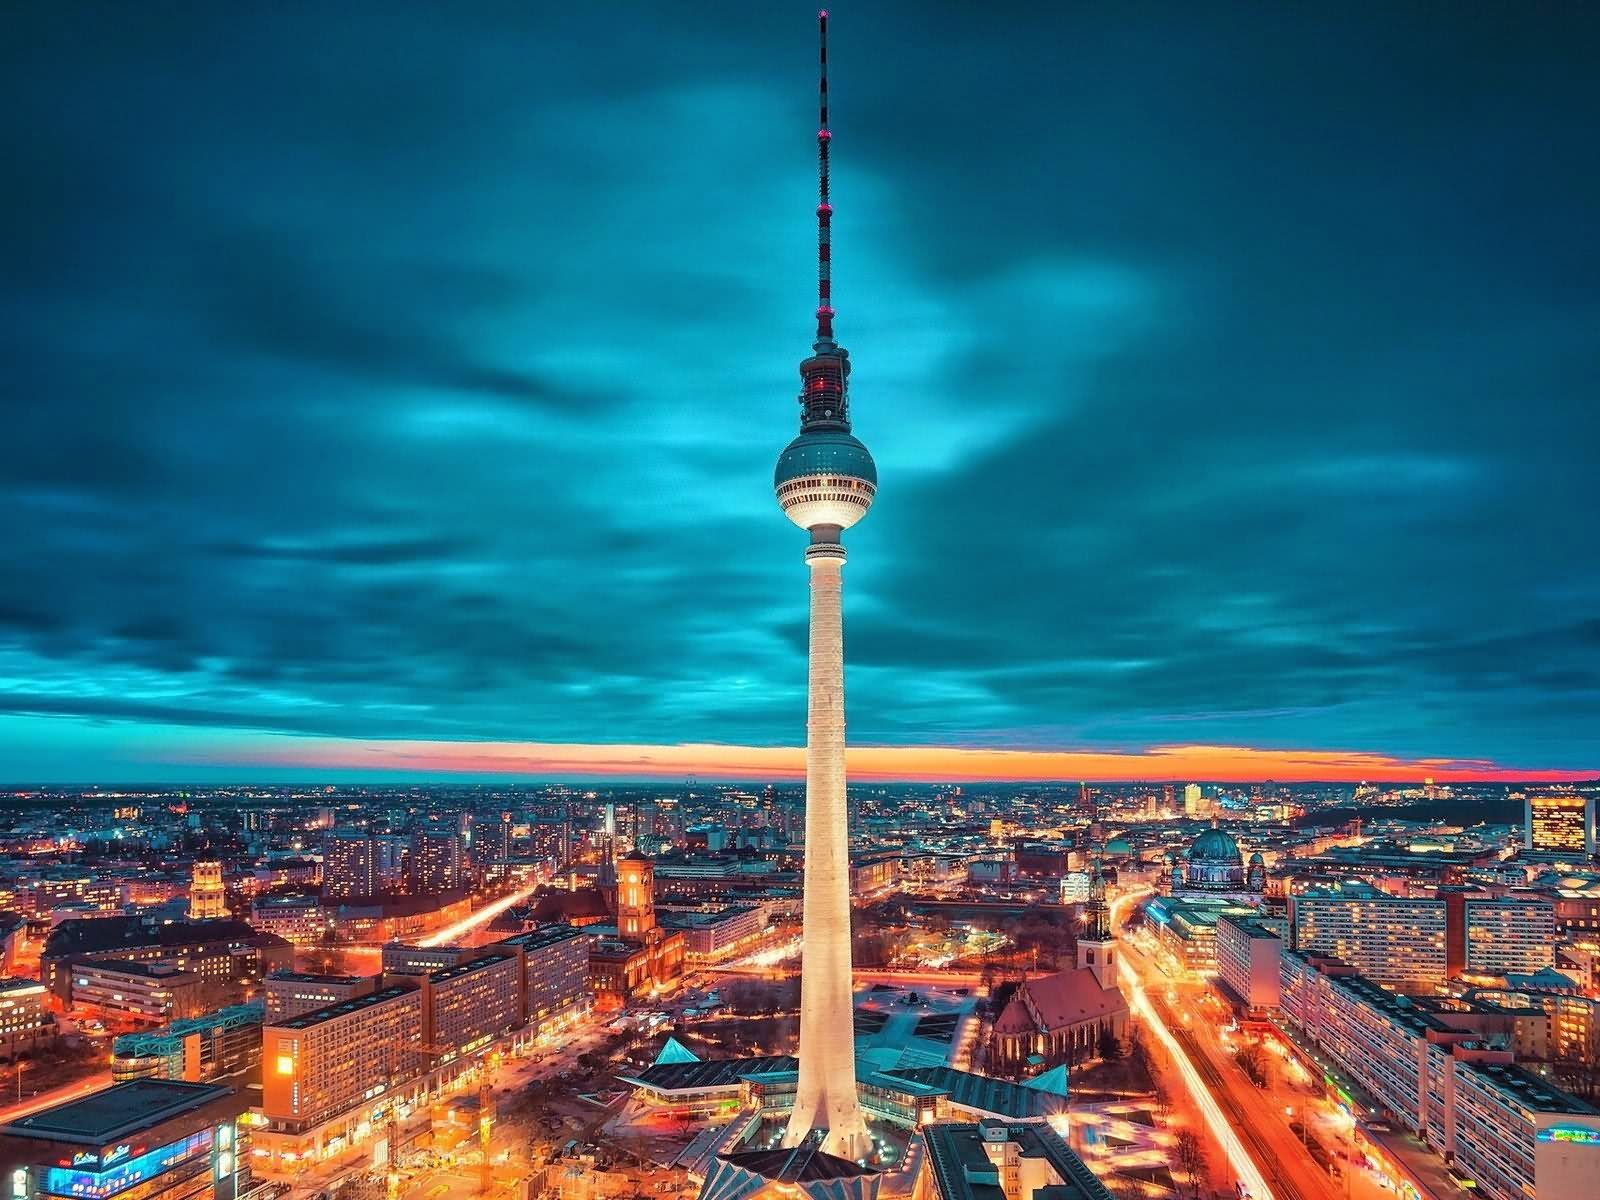 Fernsehturm Tv Tower In Berlin At Night